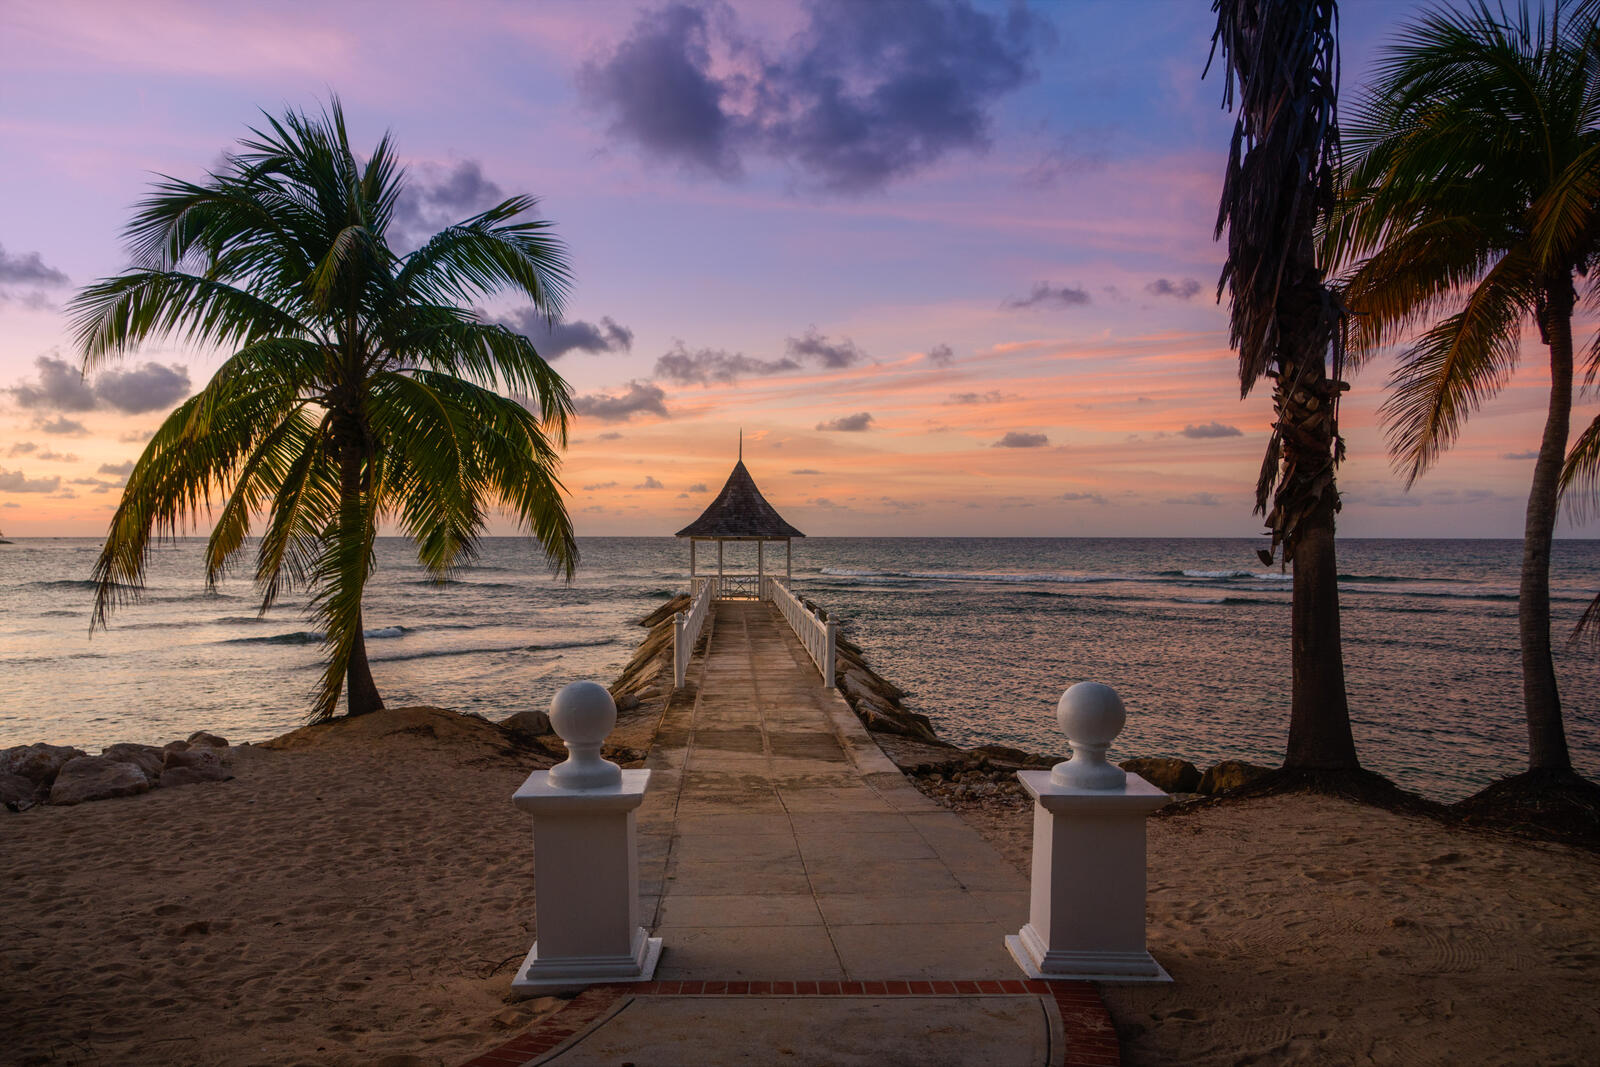 Обои пейзаж пляж Jamaica на рабочий стол